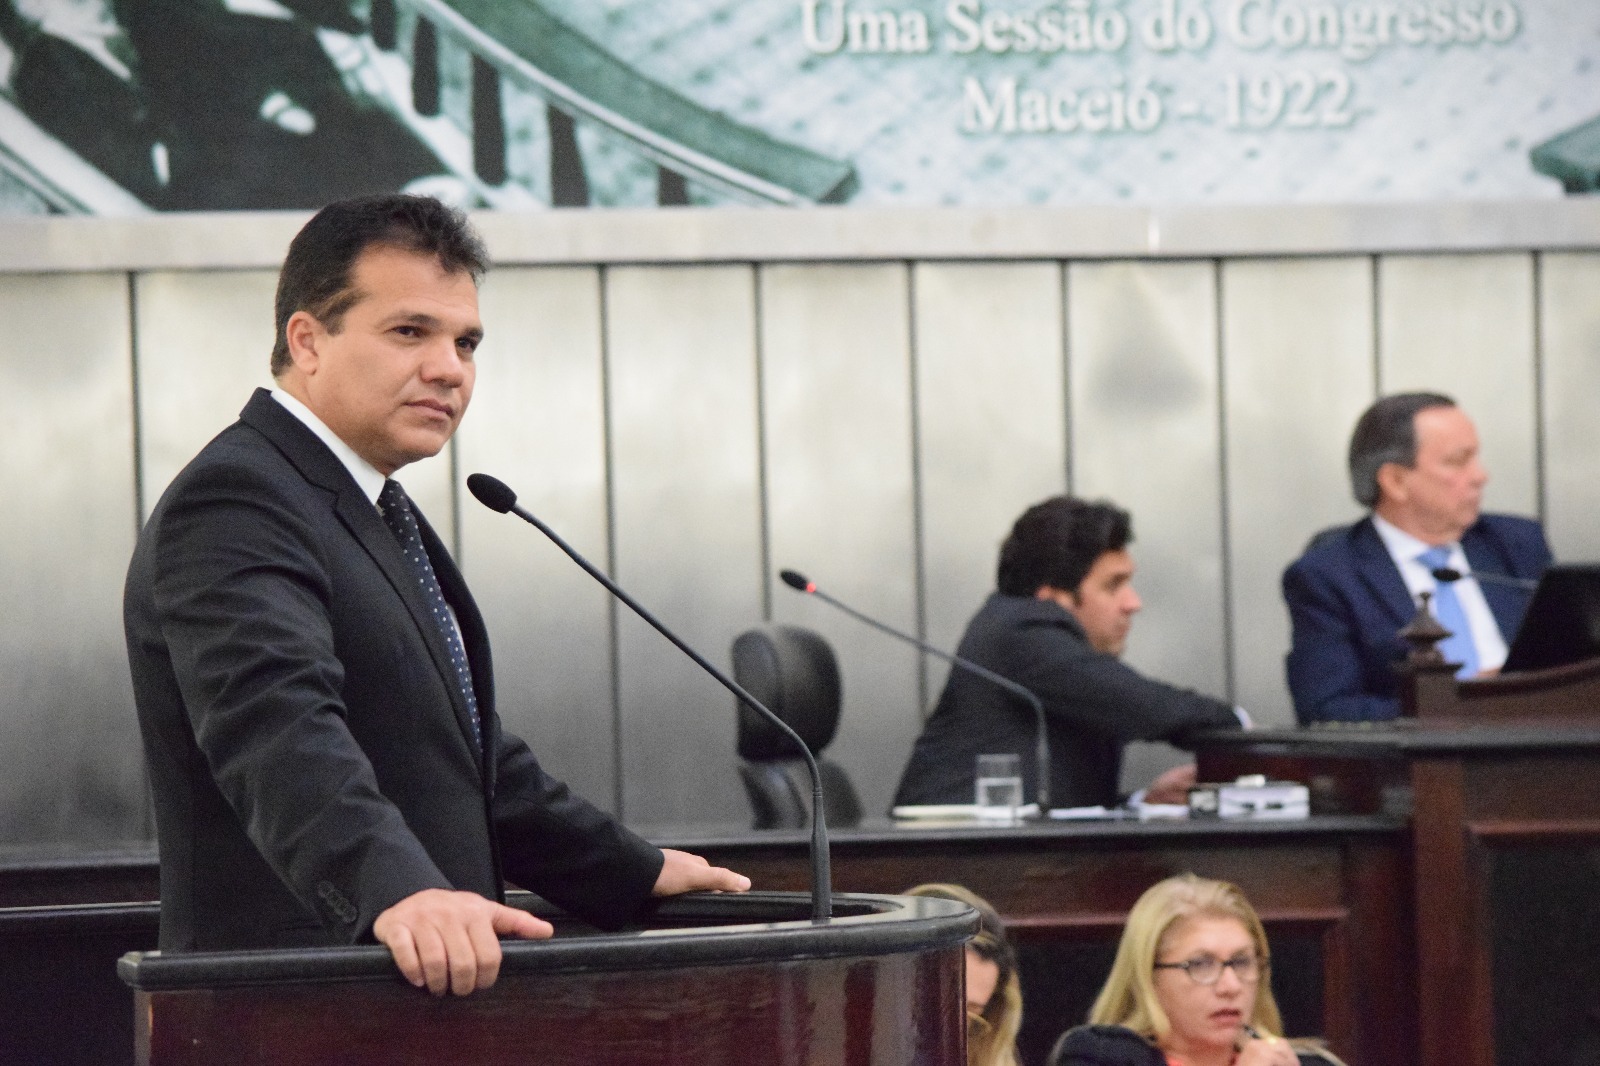 Ricardo Nezinho faz pronunciamento em solidariedade ao senador Renan Calheiros